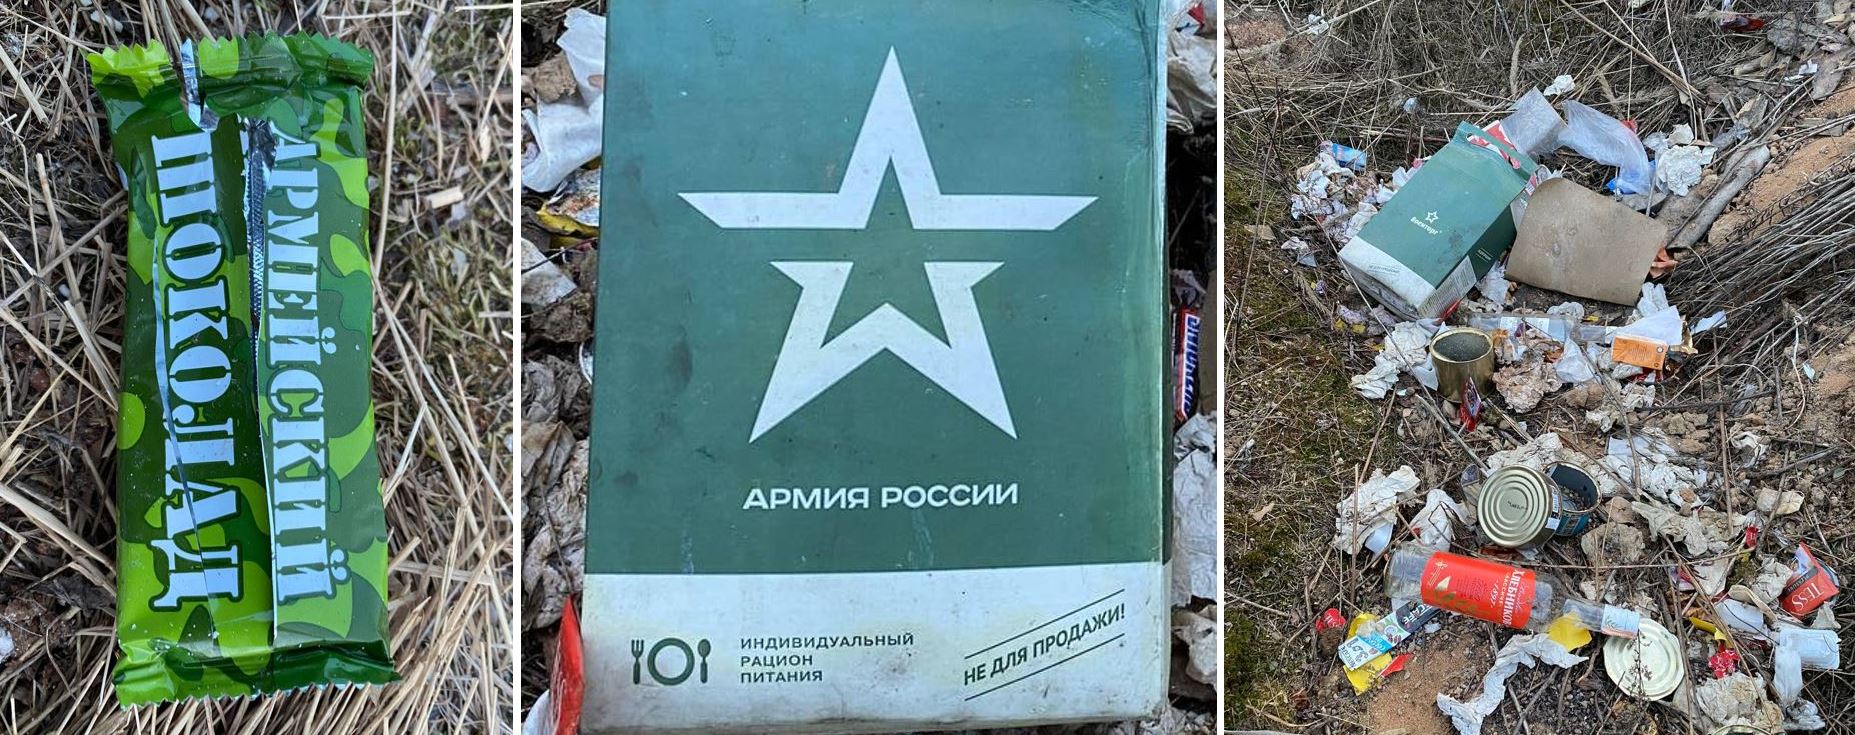 Сухпайки, бутылки, обёртки: “Армия России” гниёт в минском лесу